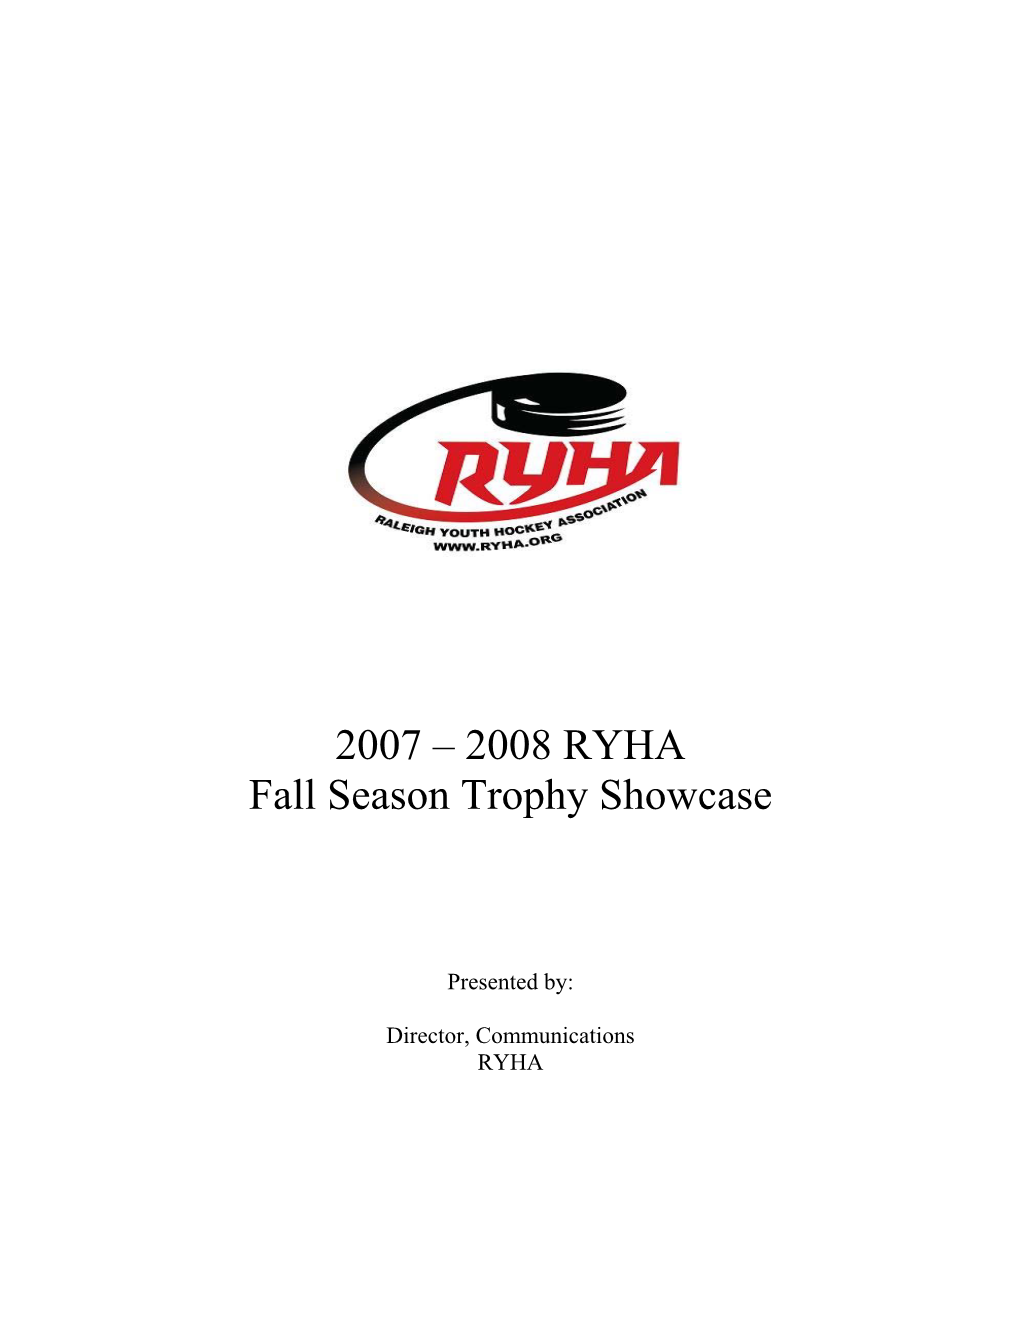 2007-2008 RYHA Fall Season Trophy Showcase